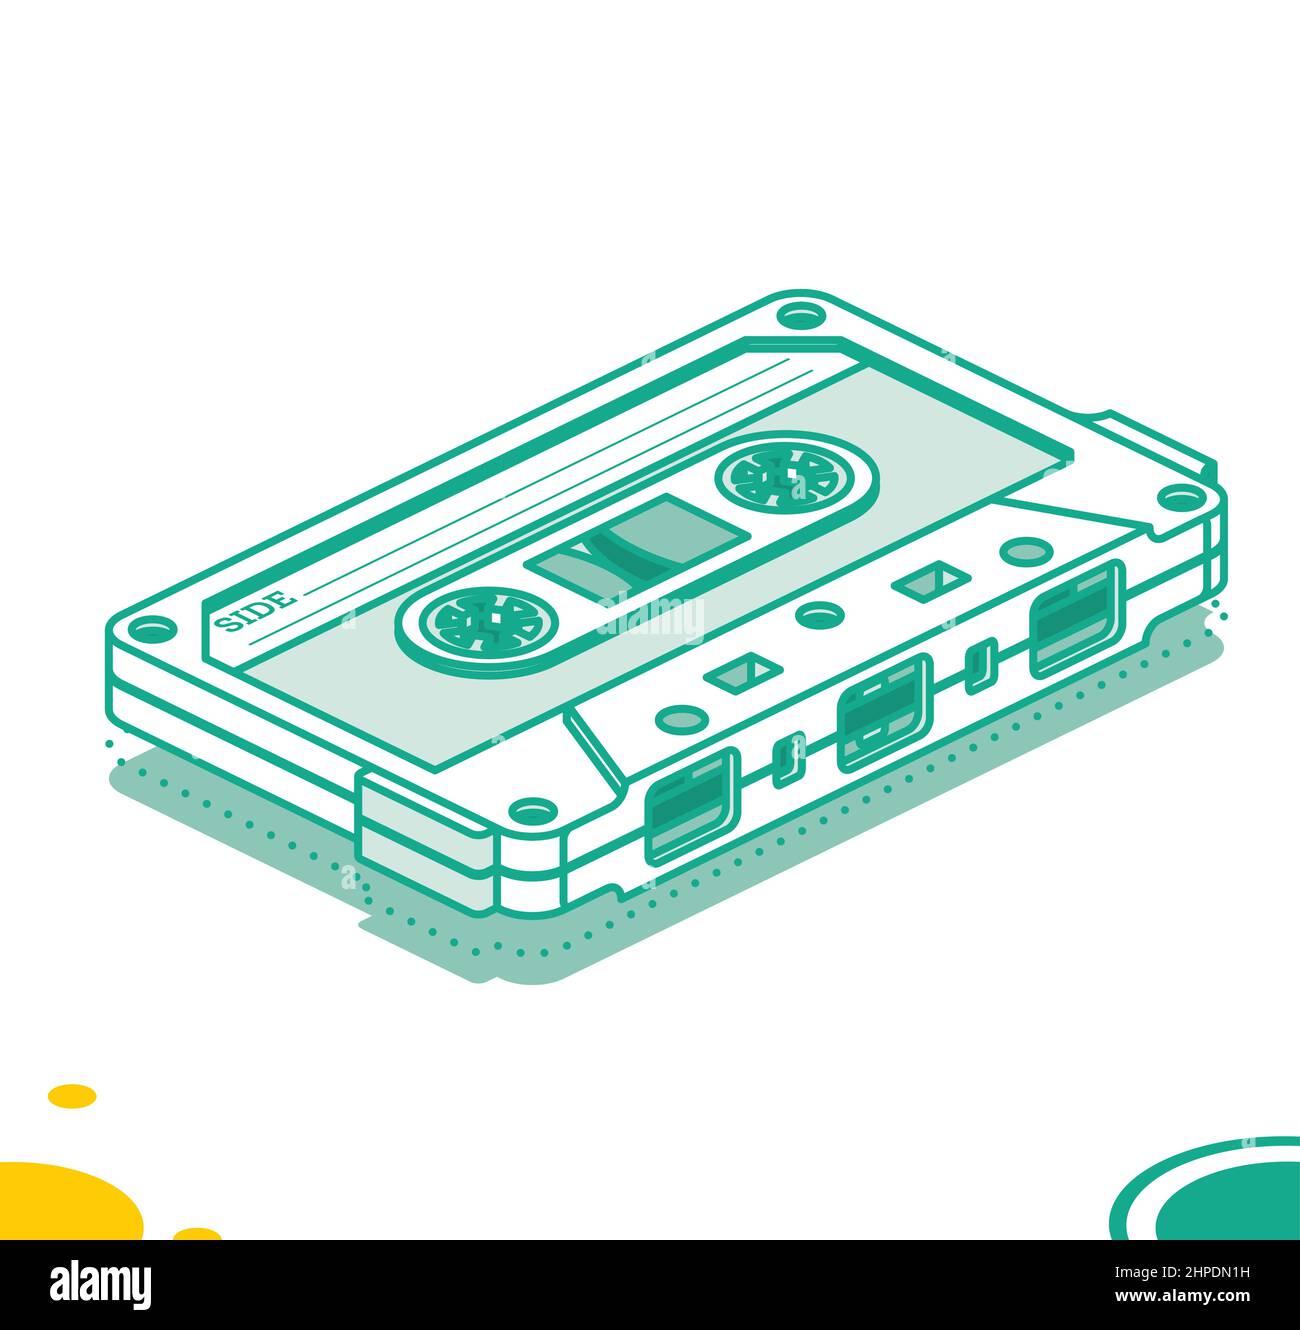 Nastro per cassette retro audio. Concetto di musica isometrica. Dispositivo retro da 80s e 90s isolato su bianco. Illustrazione vettoriale. Illustrazione Vettoriale